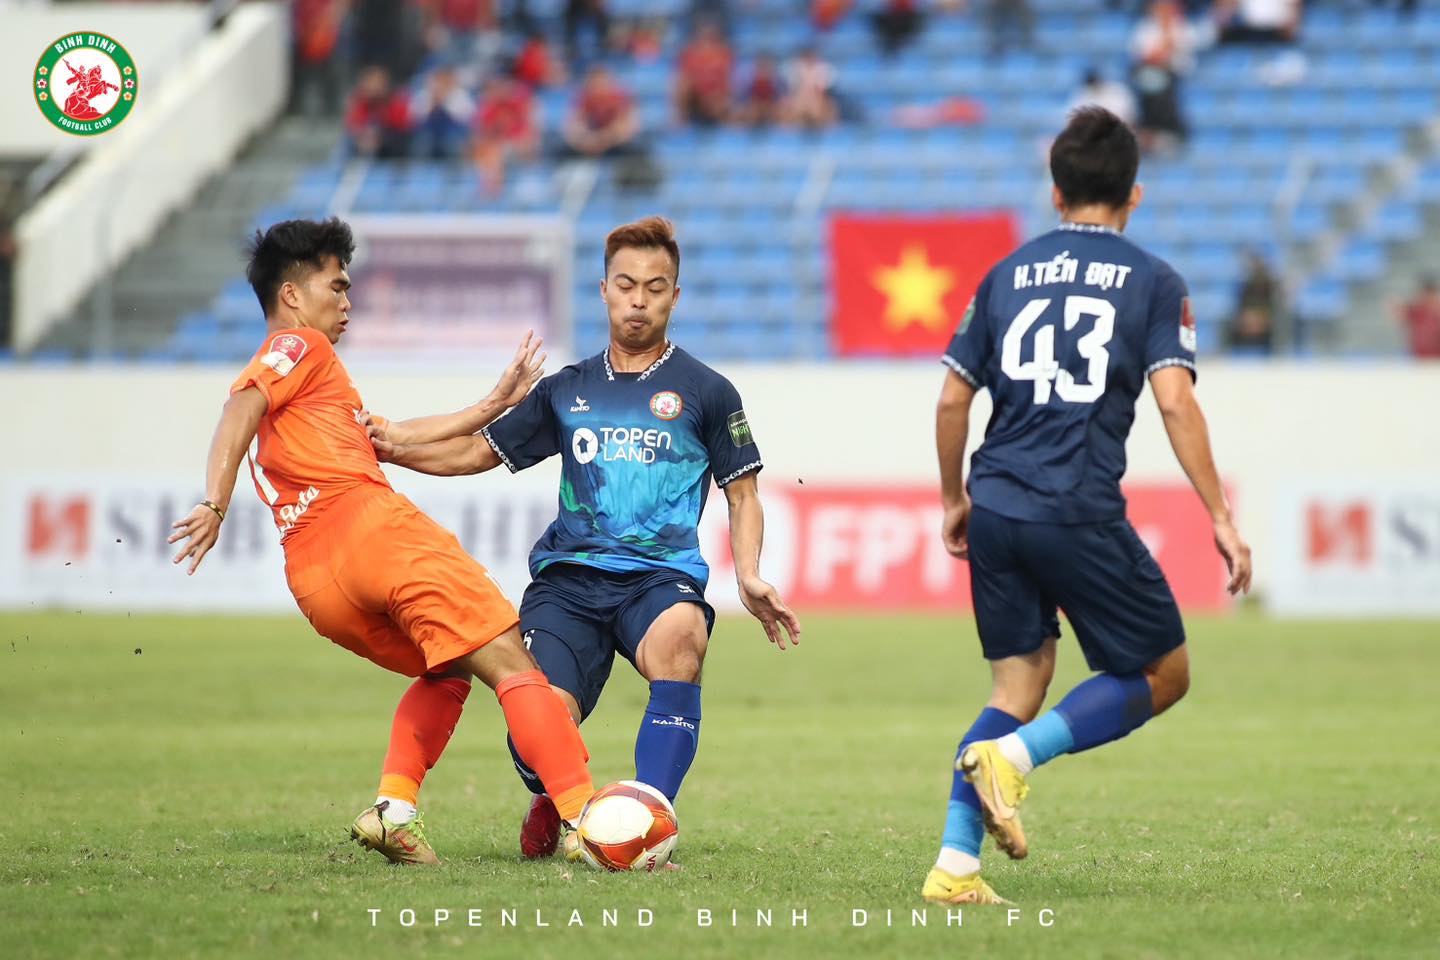 CLB Hải Phòng thua trên sân nhà, TopenLand Bình Định vươn ngôi đầu bảng - Ảnh 4.